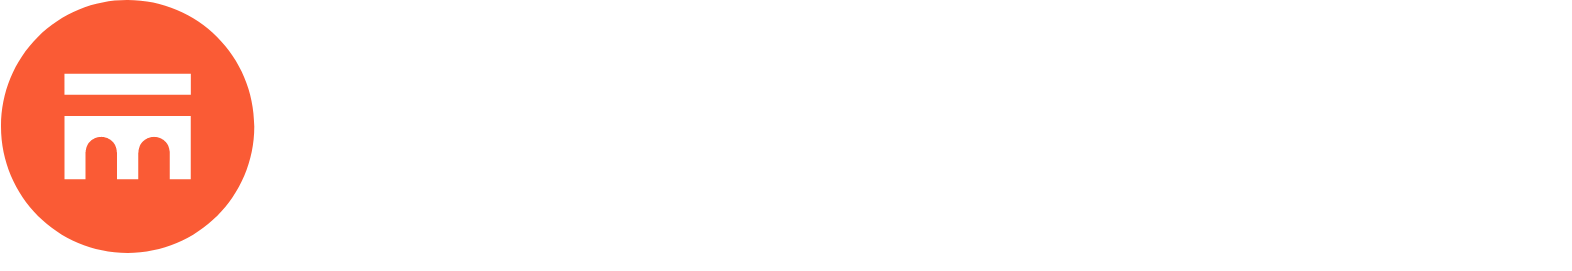 Swissquote logo grand pour les fonds sombres (PNG transparent)